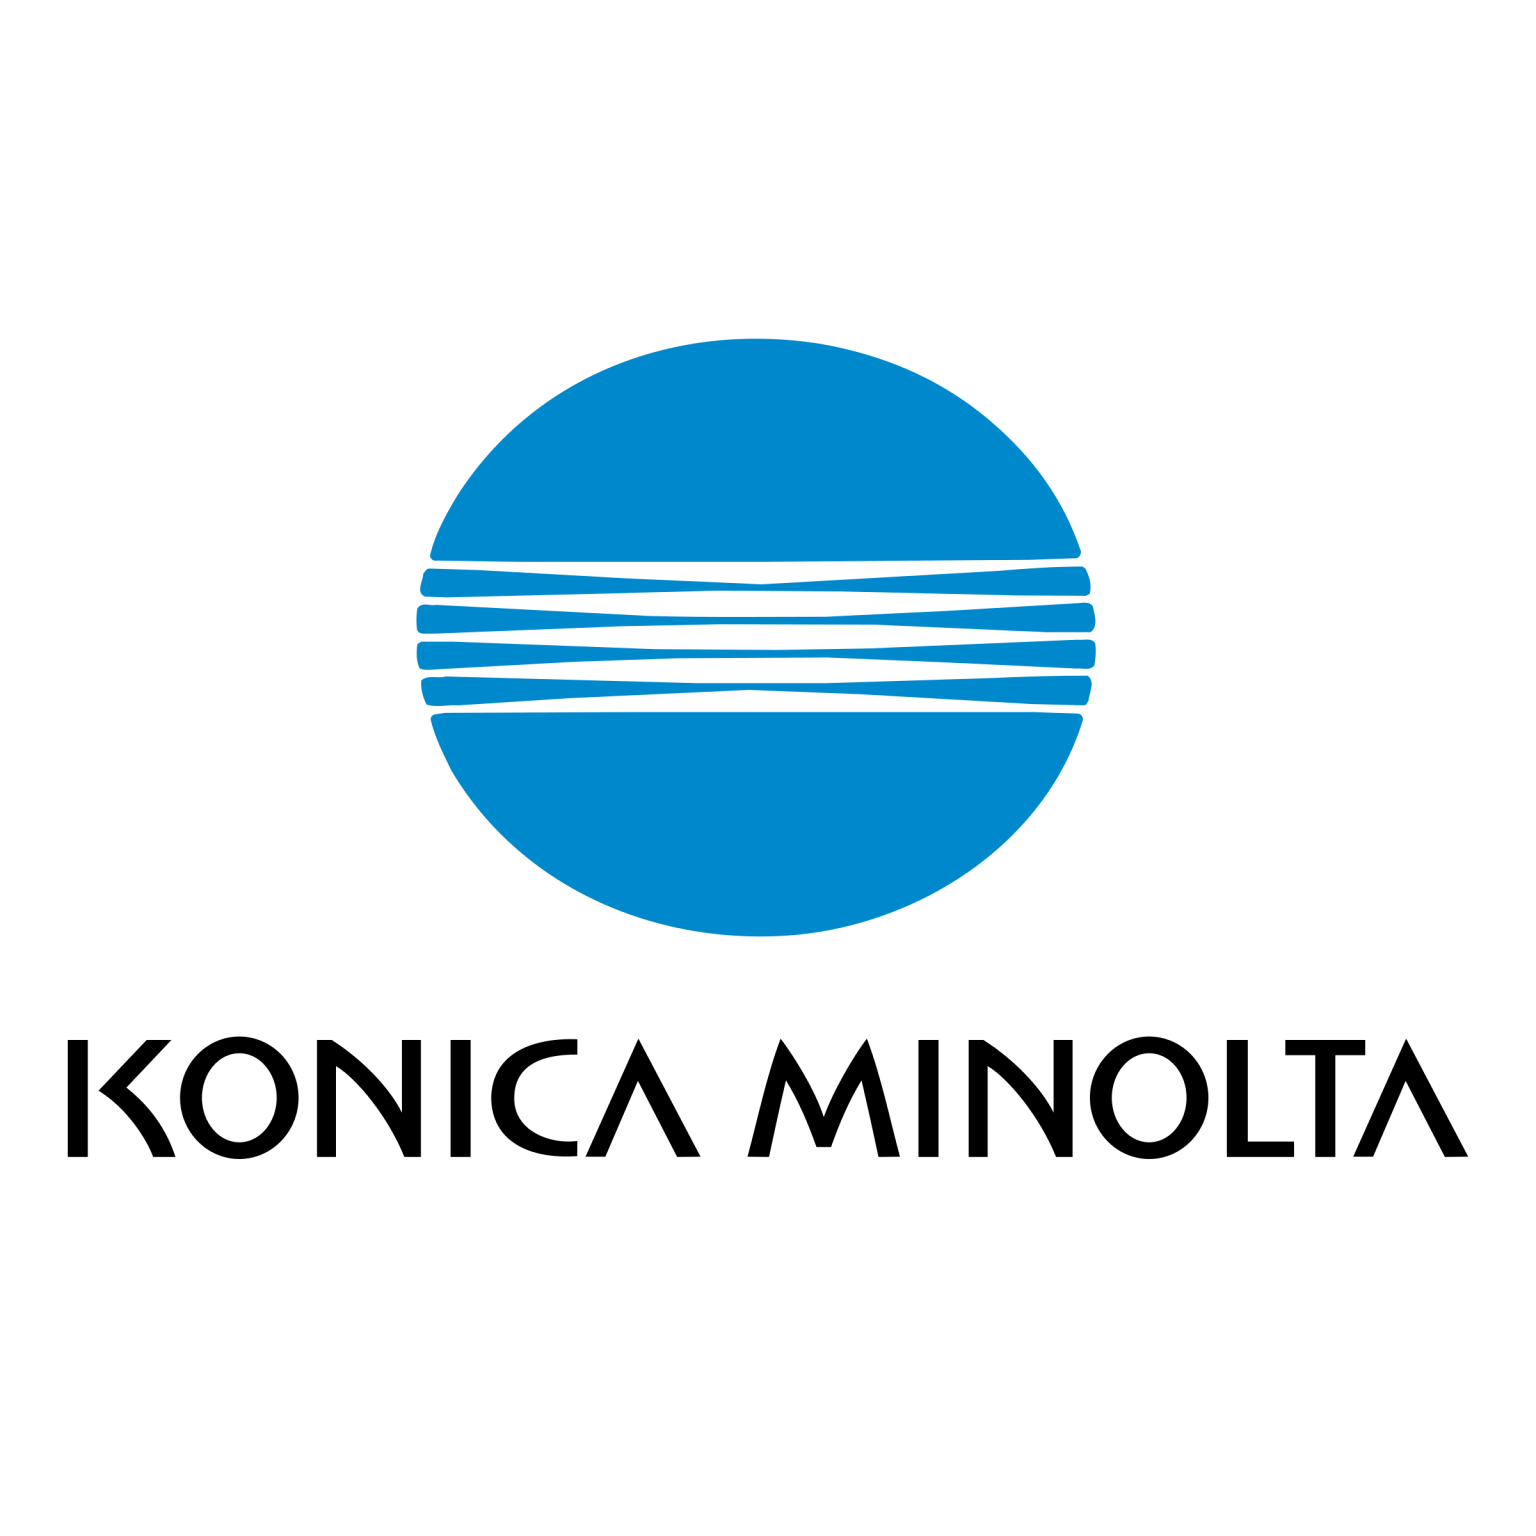 konica-minolta-1536x1536